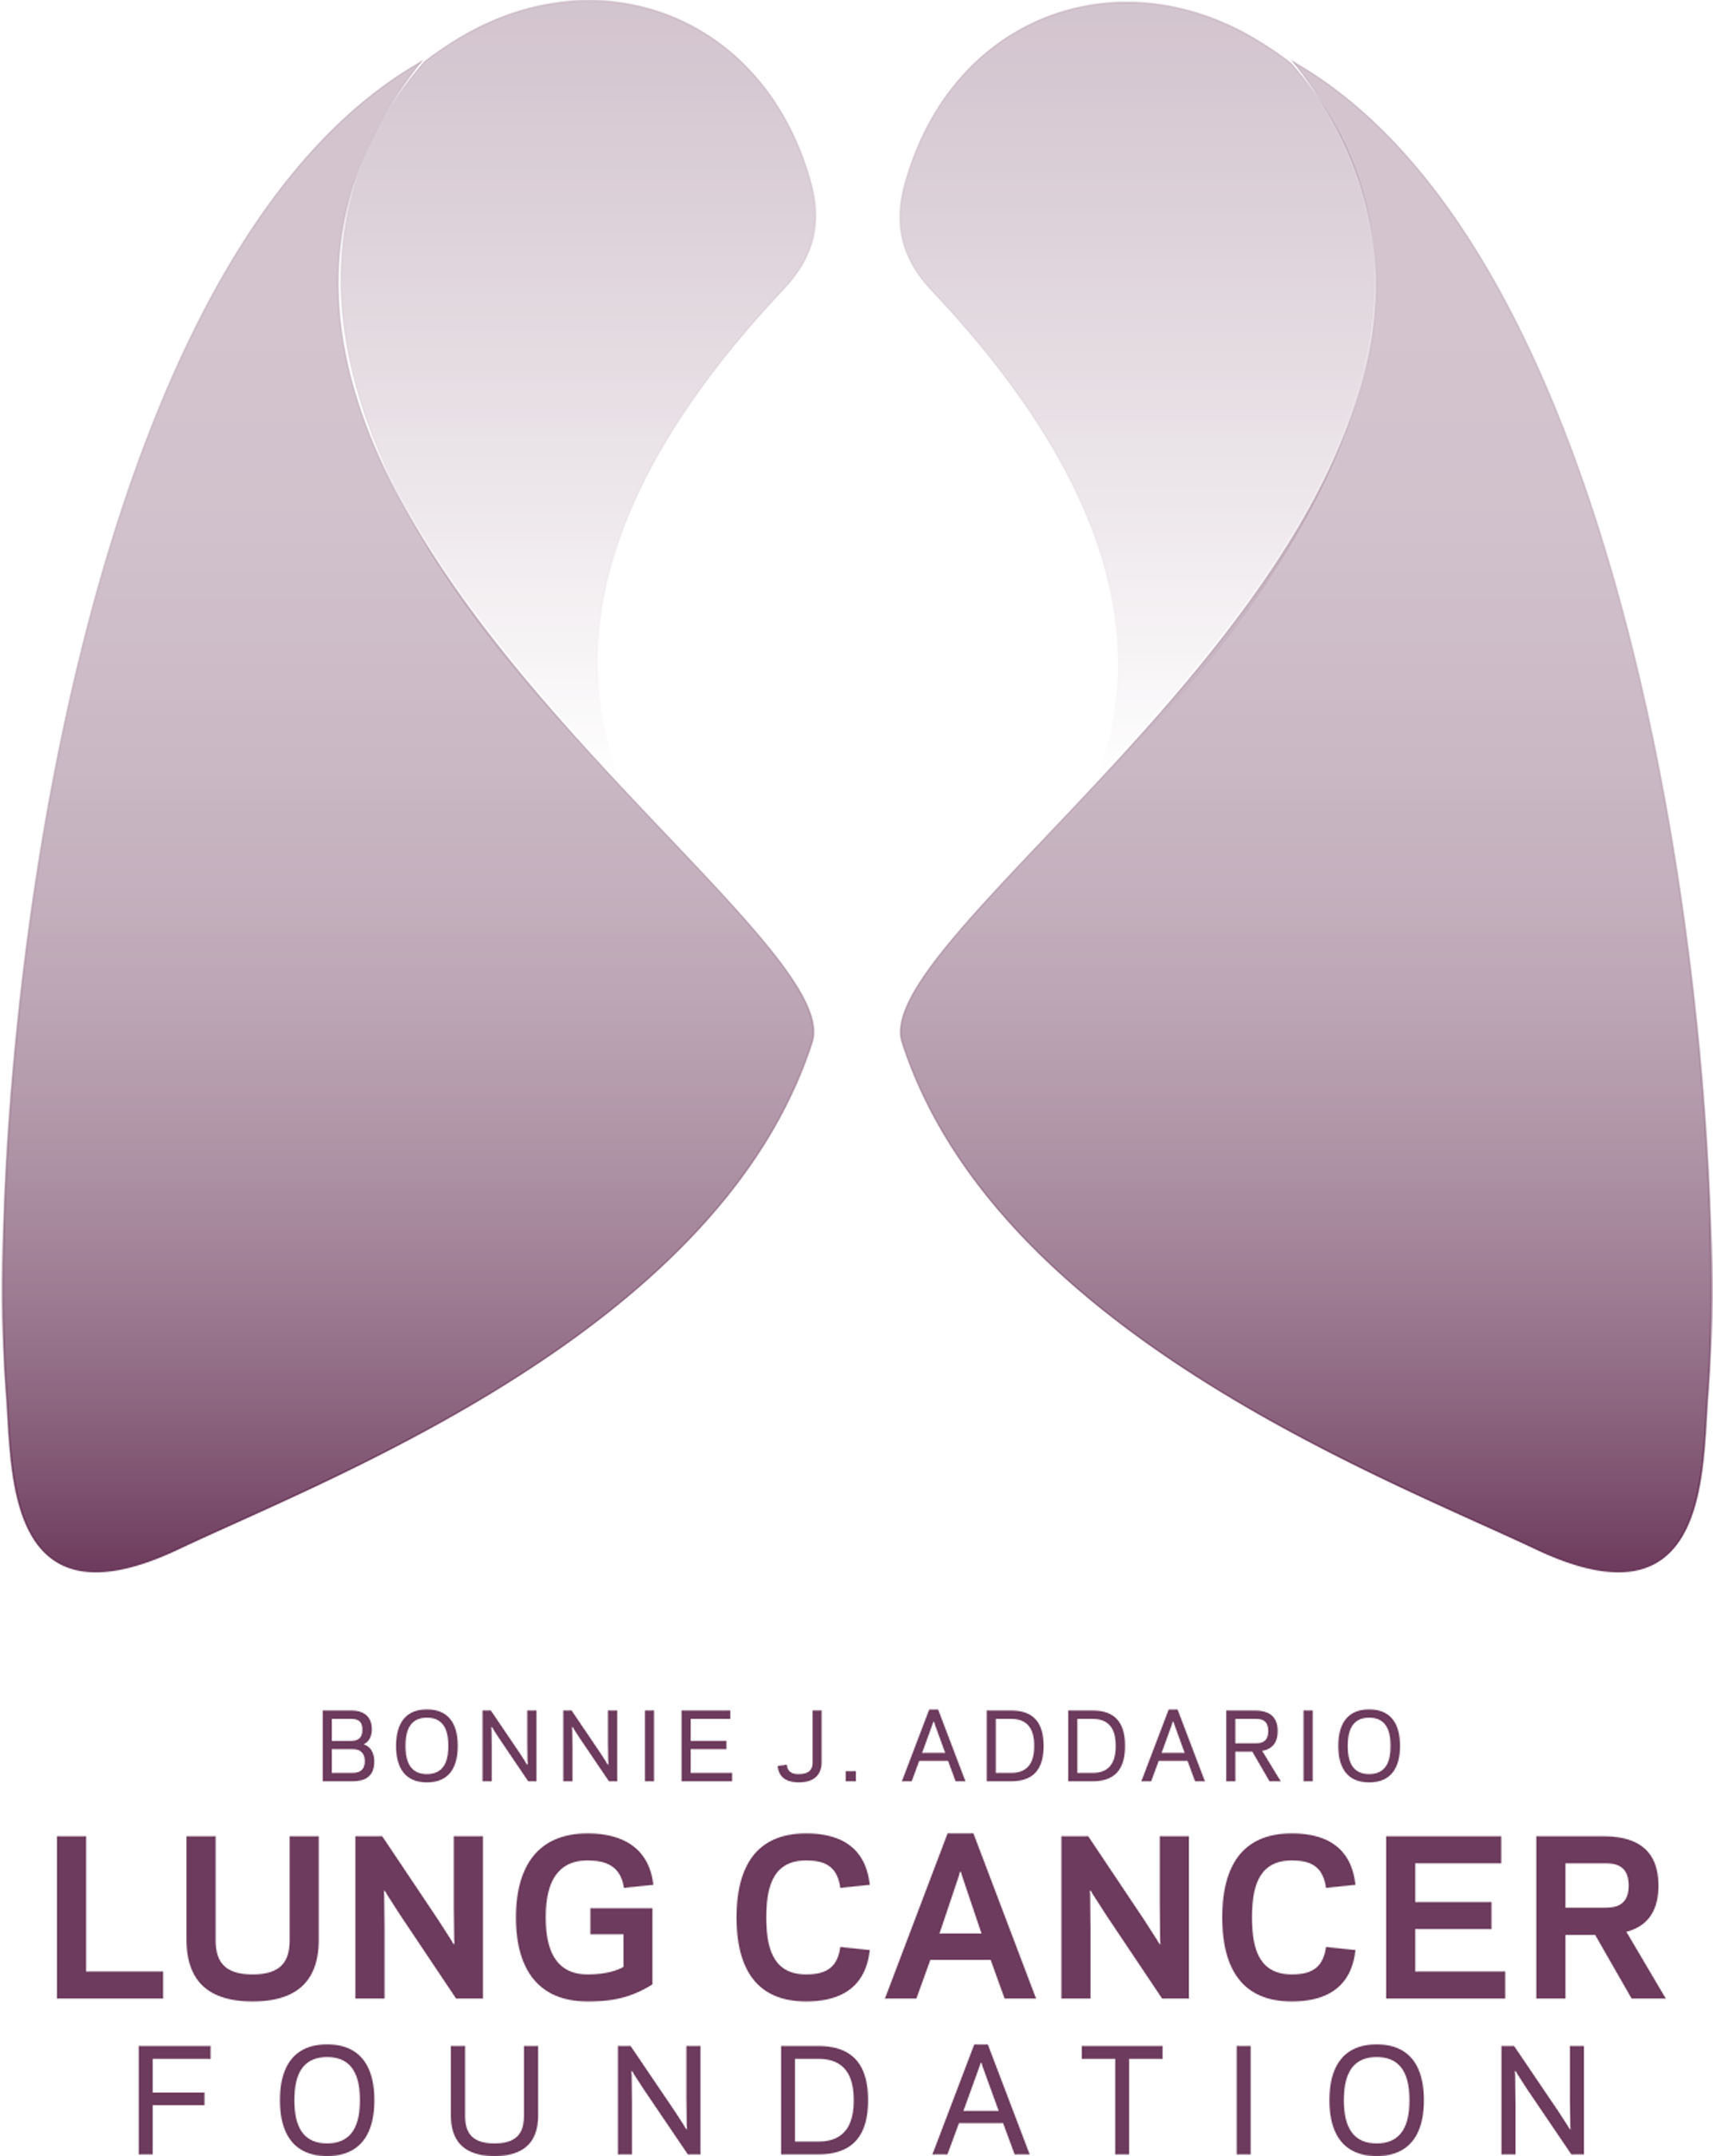 Bonnie J. Addario Lung Cancer Foundation logo.